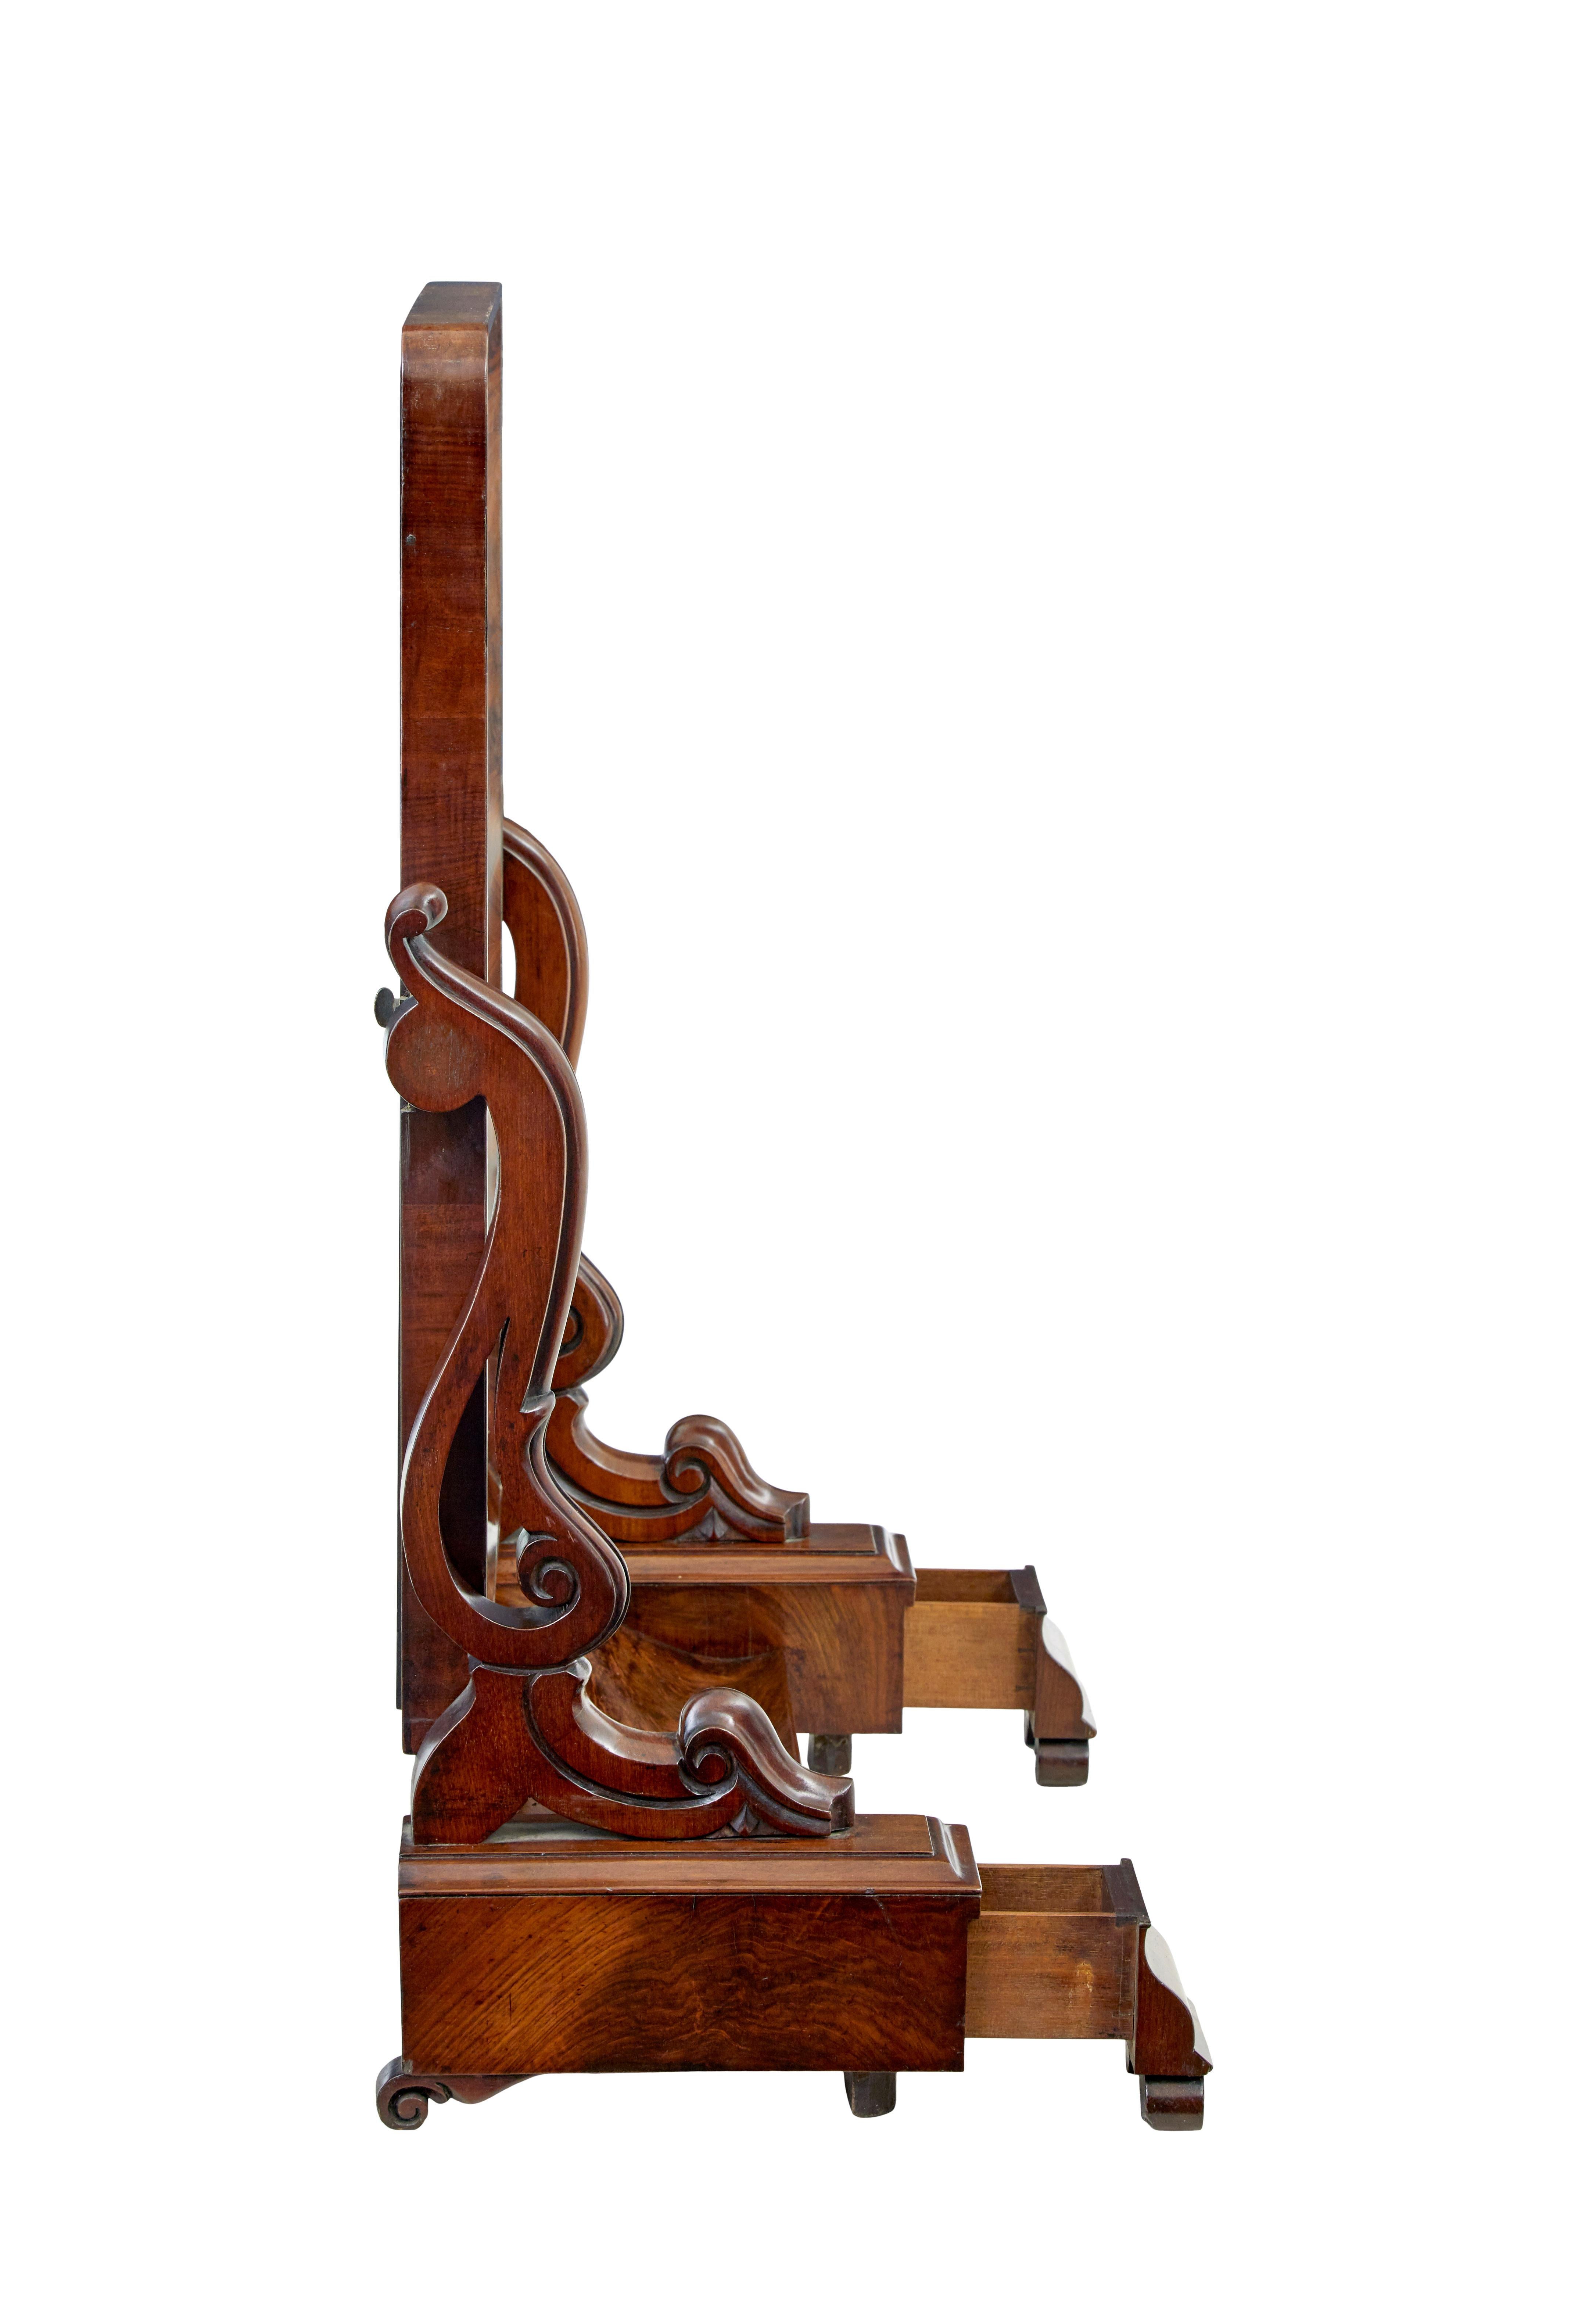 Frühviktorianischer Mahagoni-Spiegel aus dem 19. Jahrhundert, ca. 1840.

Hochwertiger frühviktorianischer Schminkspiegel um 1840. Spiegel mit verstellbarem Winkel, getragen von 2 geschnitzten Rollstützen. Steht auf einem Sockel mit geheimen